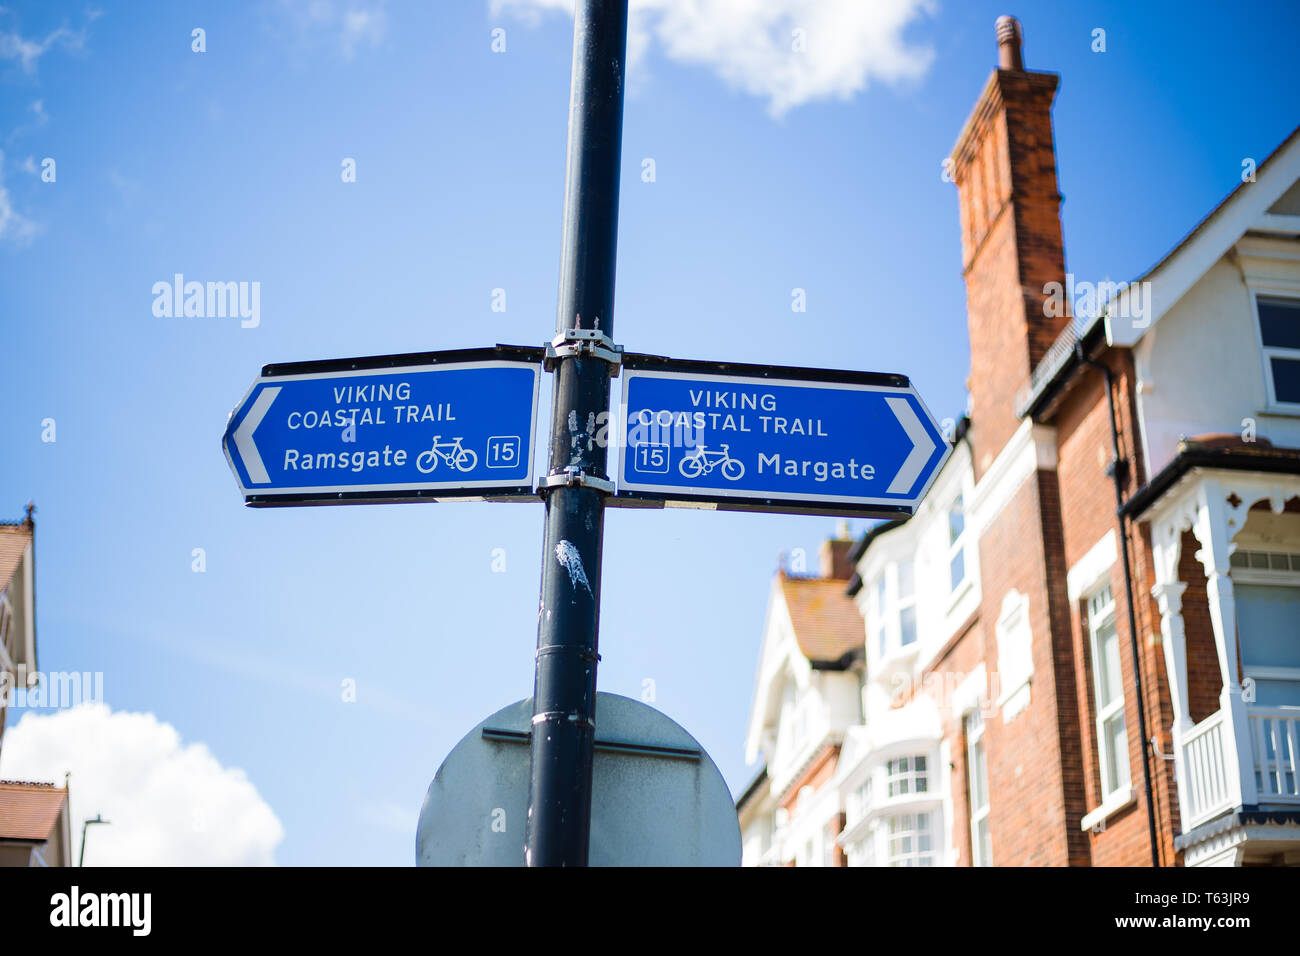 Broadstairs, Kent, UK. Dos señales de color azul que indica la dirección de la Viking caminata costera. Uno dirigiendo a Ramsgate los otros a Margate. Foto de stock